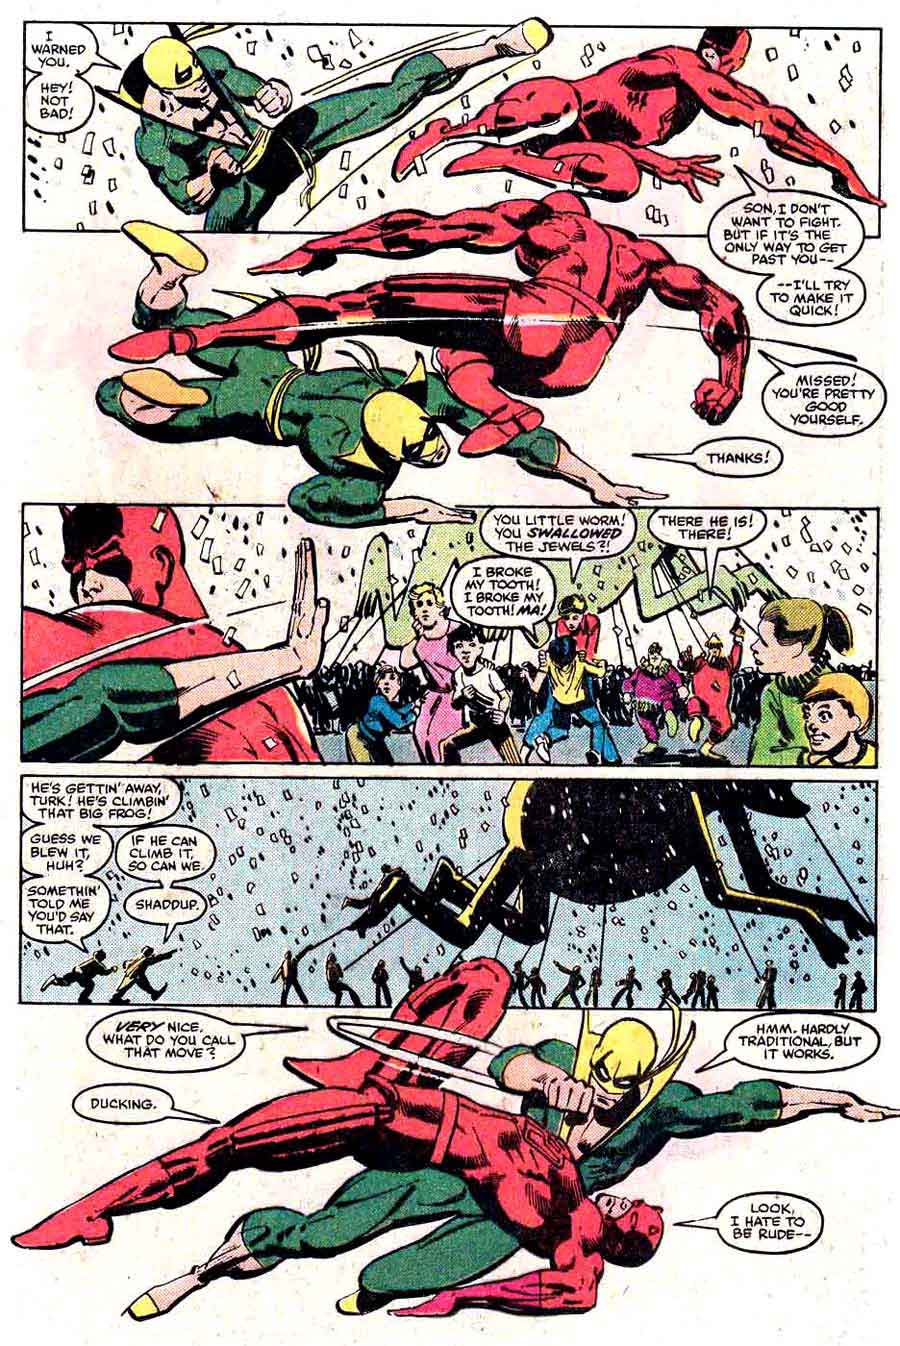 Daredevil v1 #178 marvel comic book page art by Frank Miller